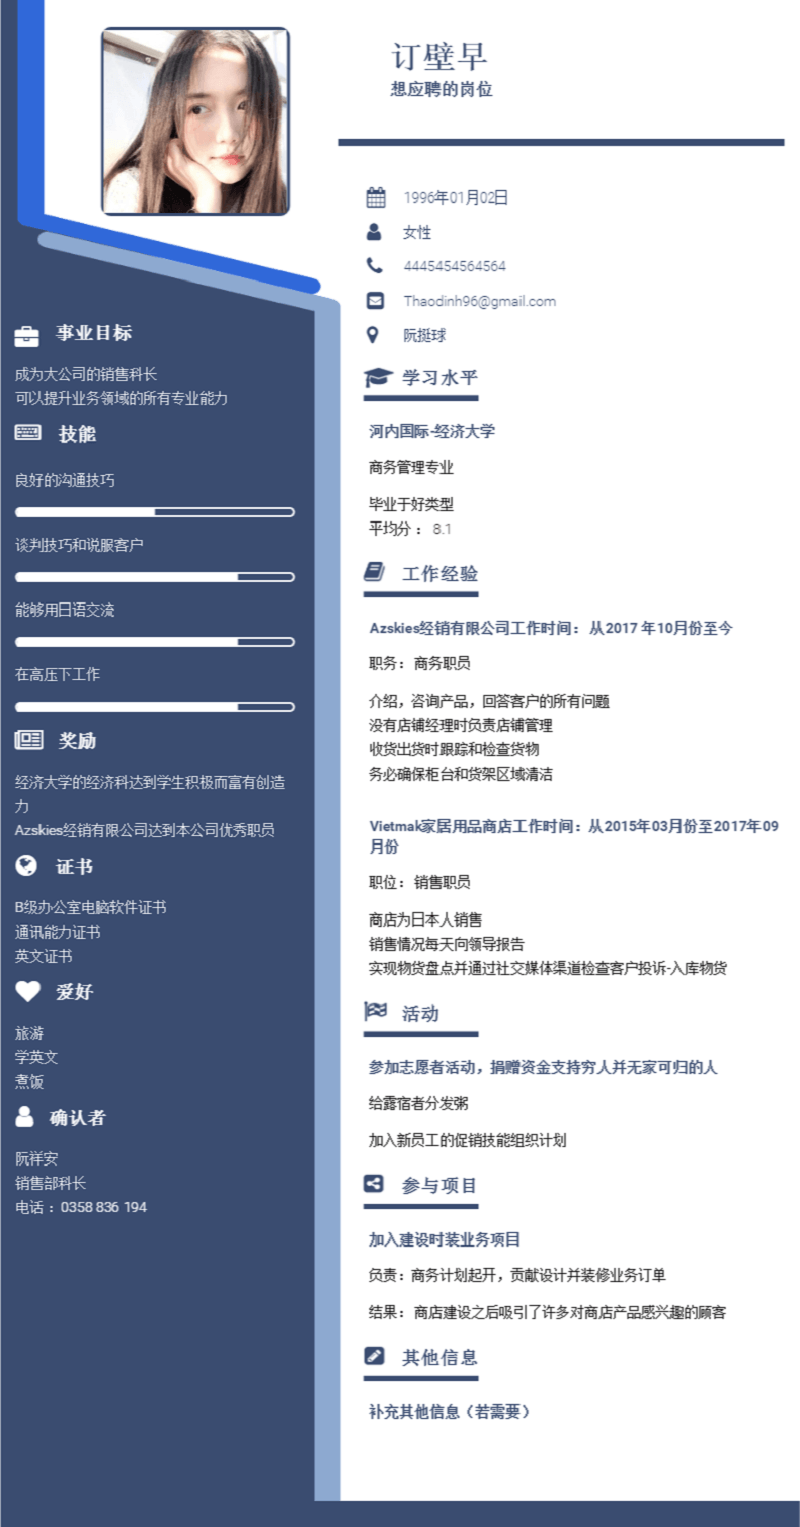 Mẫu CV tiếng Trung chuẩn nhất, đơn giản và ấn tượng 2022 ...